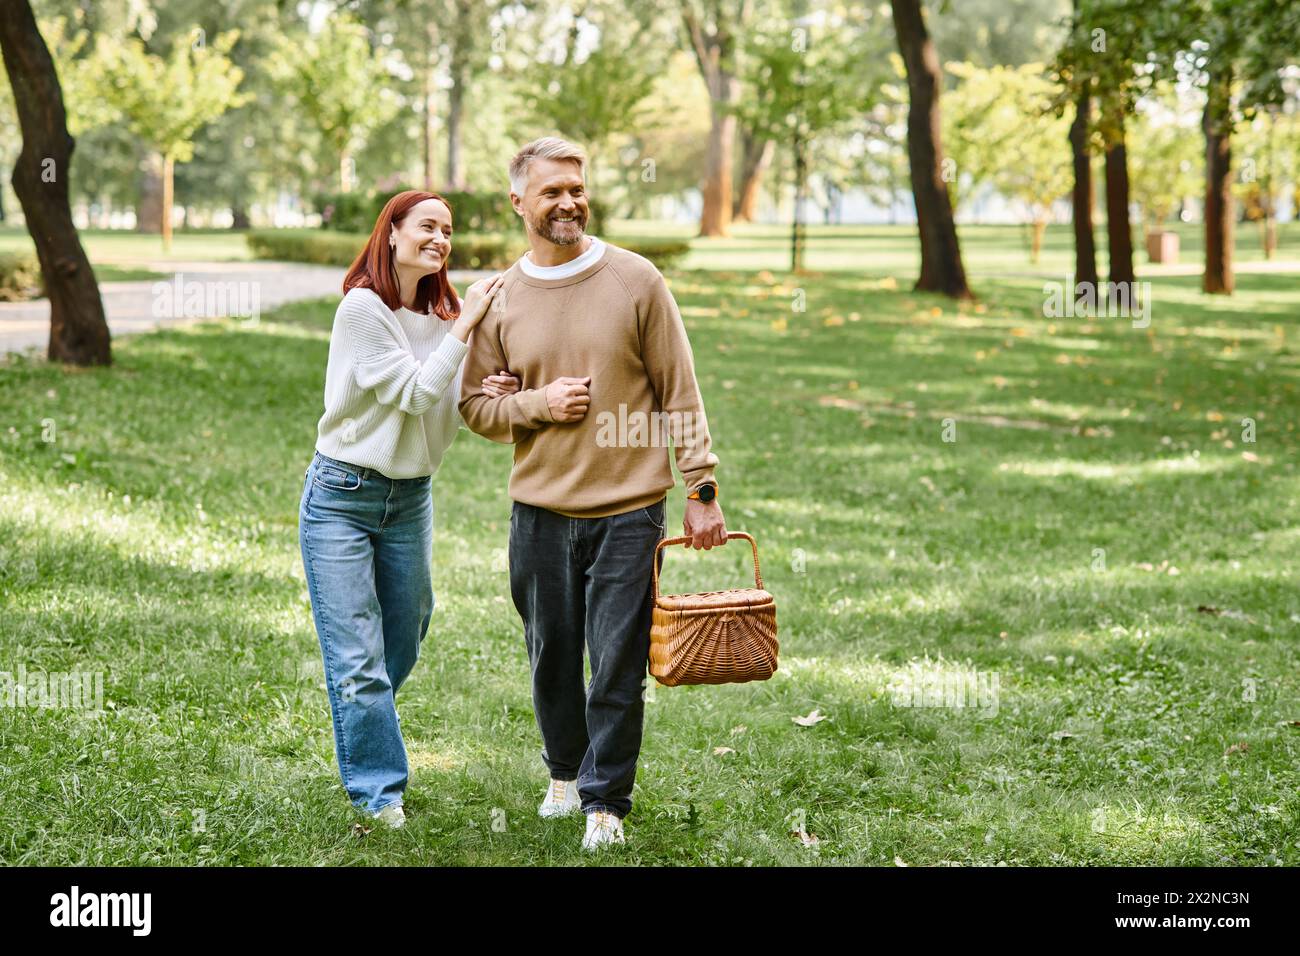 Ein Mann und eine Frau in lässiger Kleidung gehen friedlich durch einen Park. Stockfoto